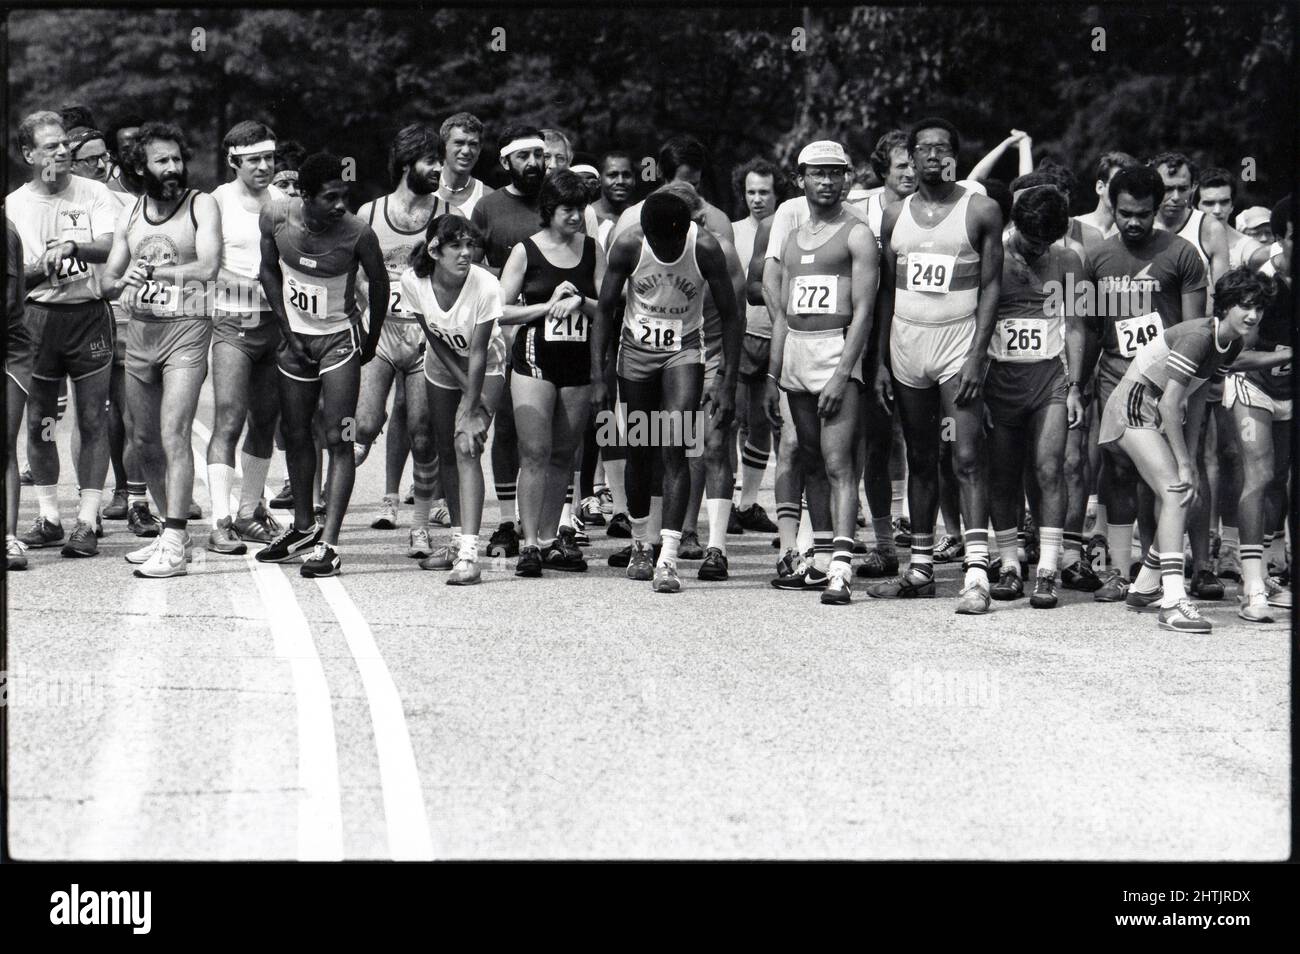 Eine vielfältige Gruppe von Männern und Frauen erwartet die Startpistole, um ein Mittelstreckenrennen in Prospect Park, Brooklyn, New York, zu beginnen. Im Jahr 1981. Stockfoto